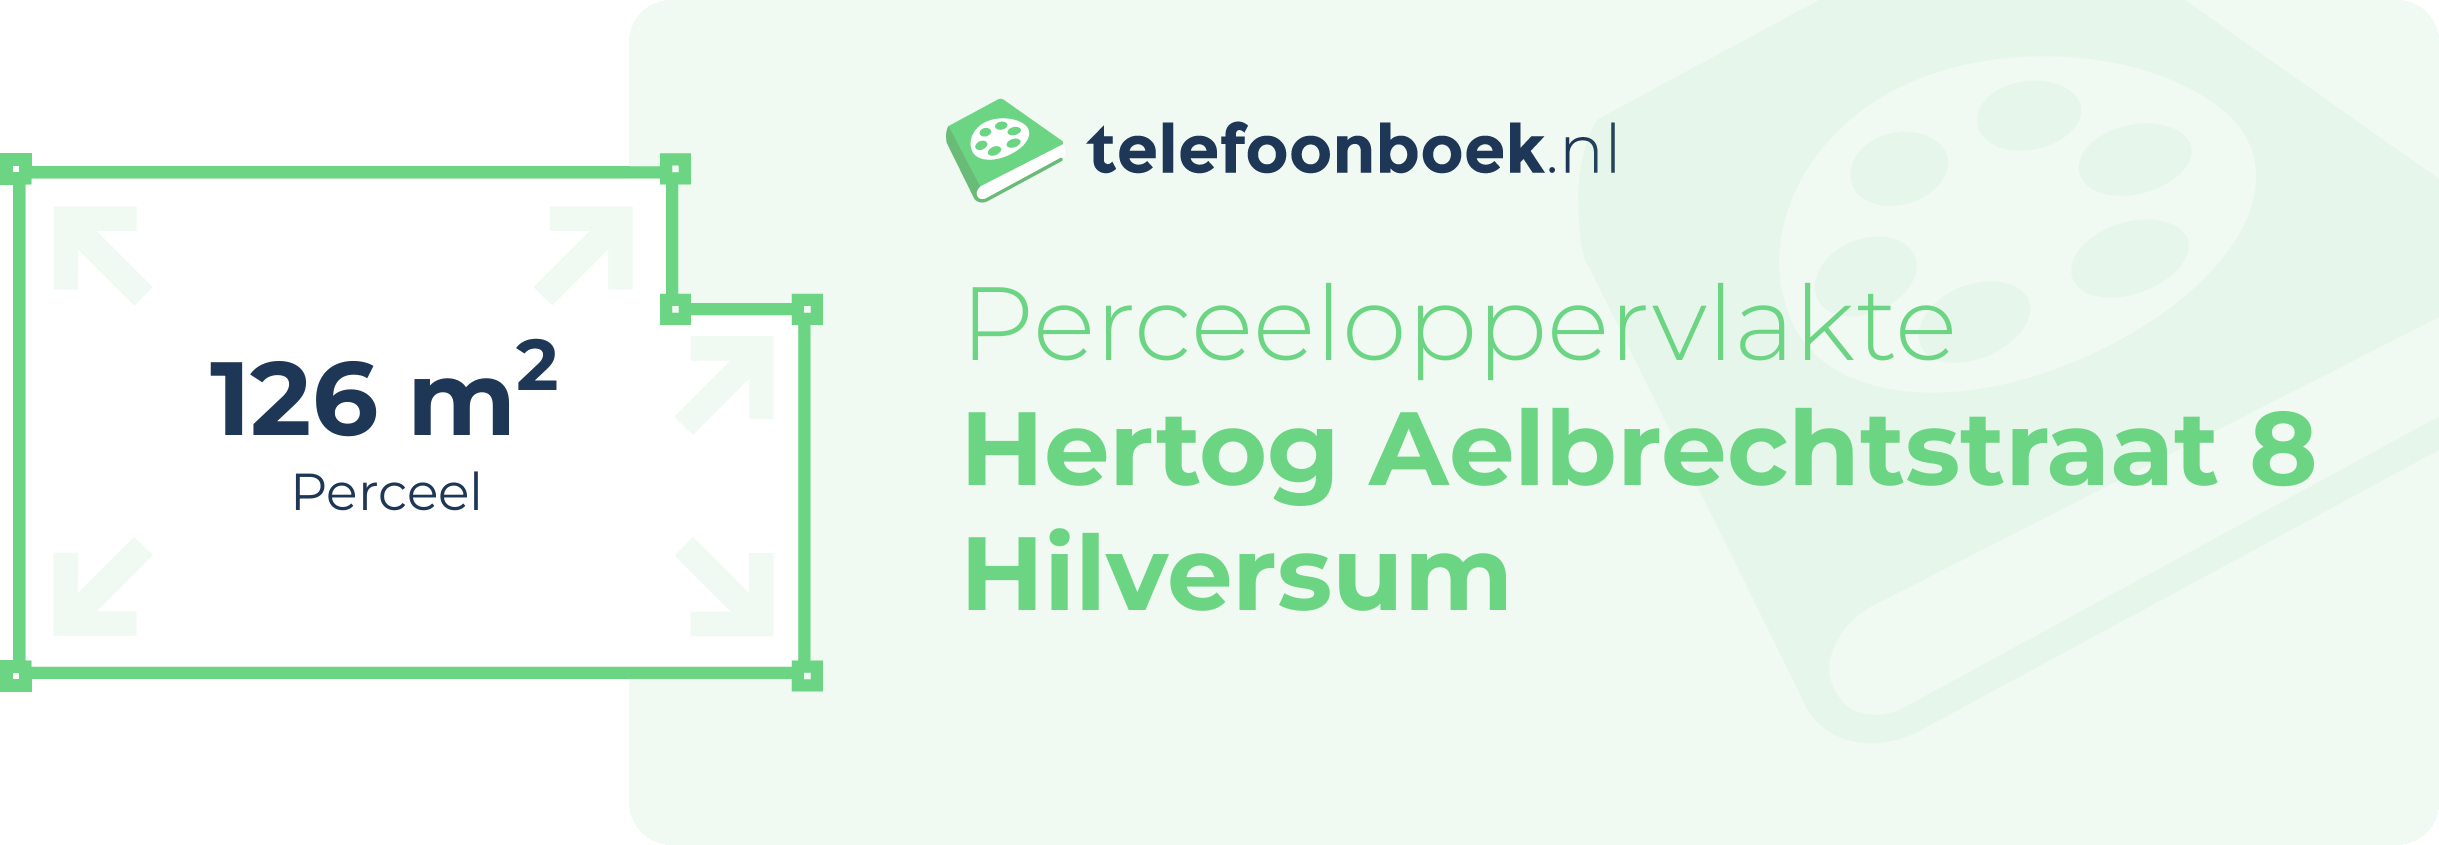 Perceeloppervlakte Hertog Aelbrechtstraat 8 Hilversum